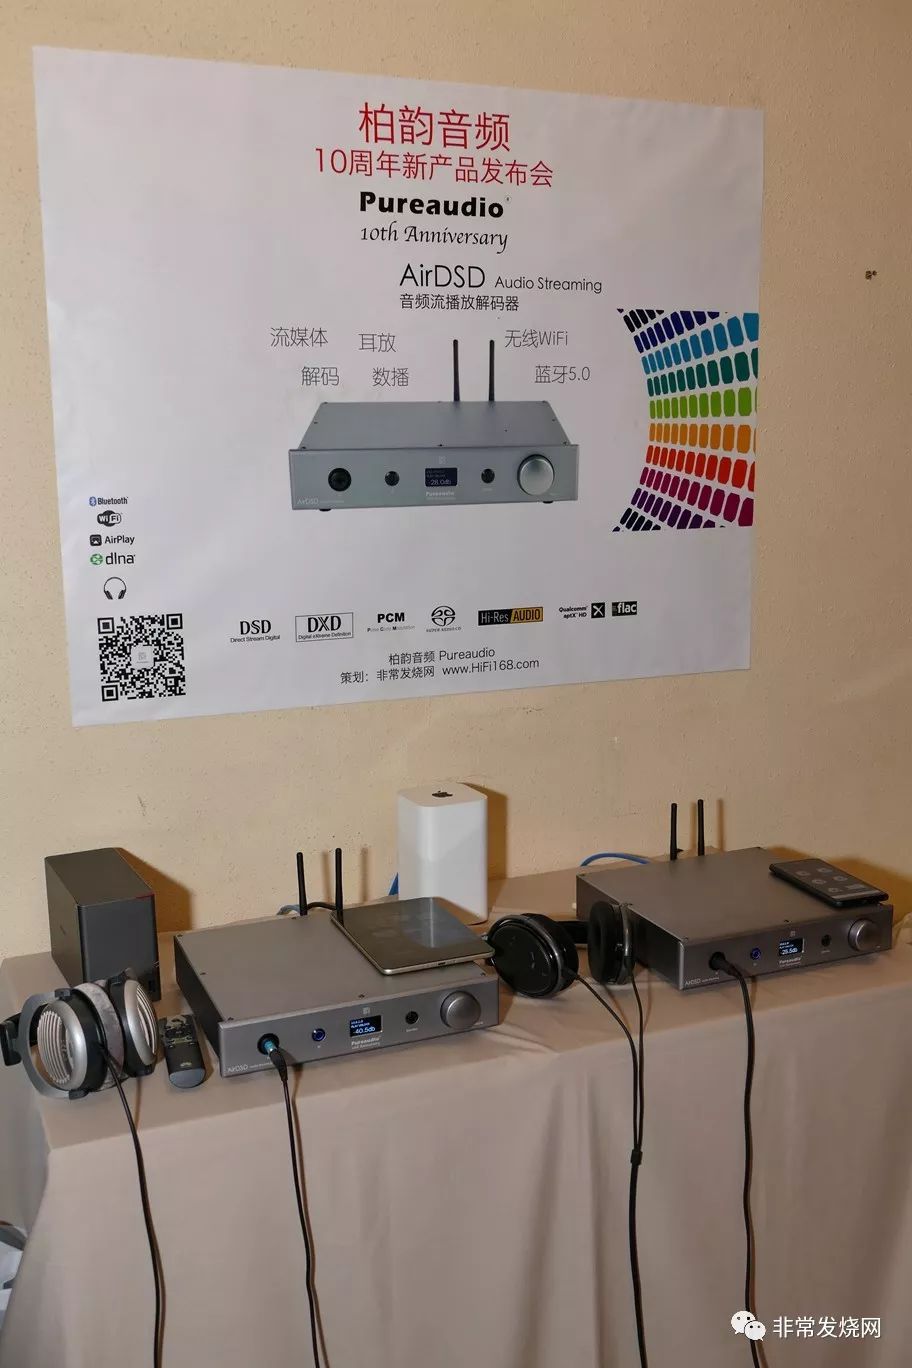 『行業動態』Pureaudio柏韻音響十周年紀念產品AirDSD音頻流播放解碼器正式發布 科技 第7張